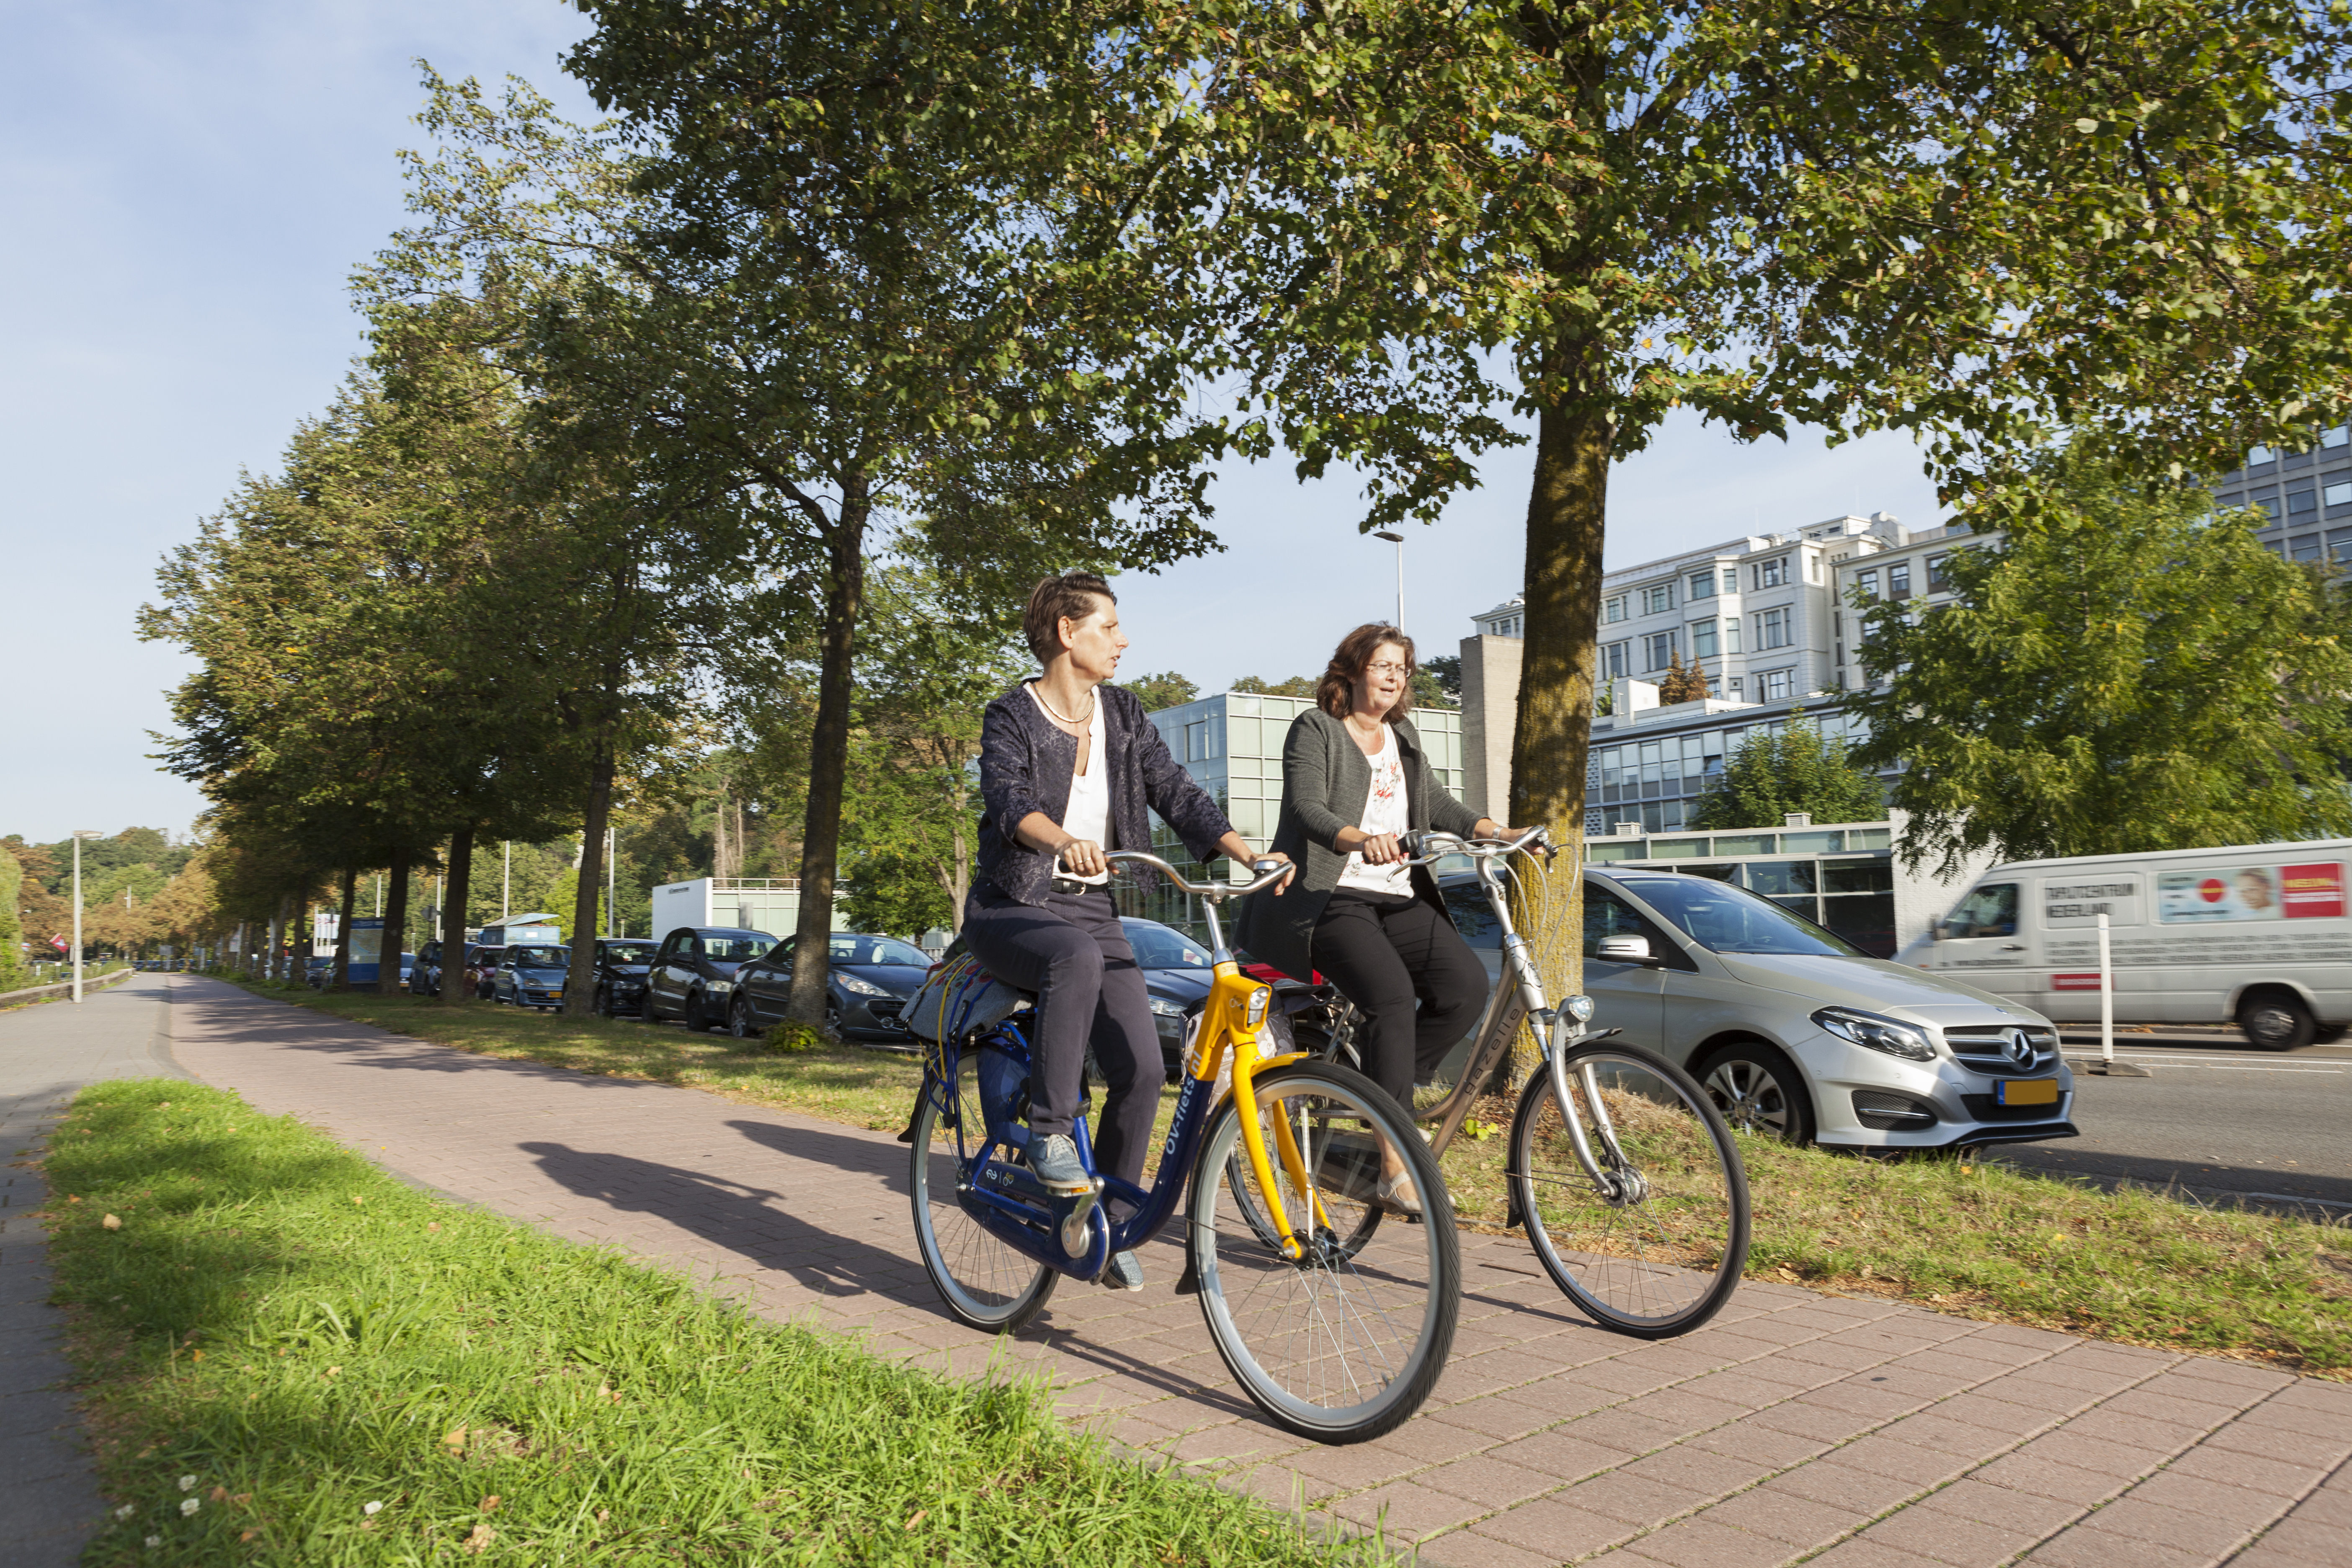 Twee fietsers in Arnhem, op eenOV-fiets en een gewone fiets